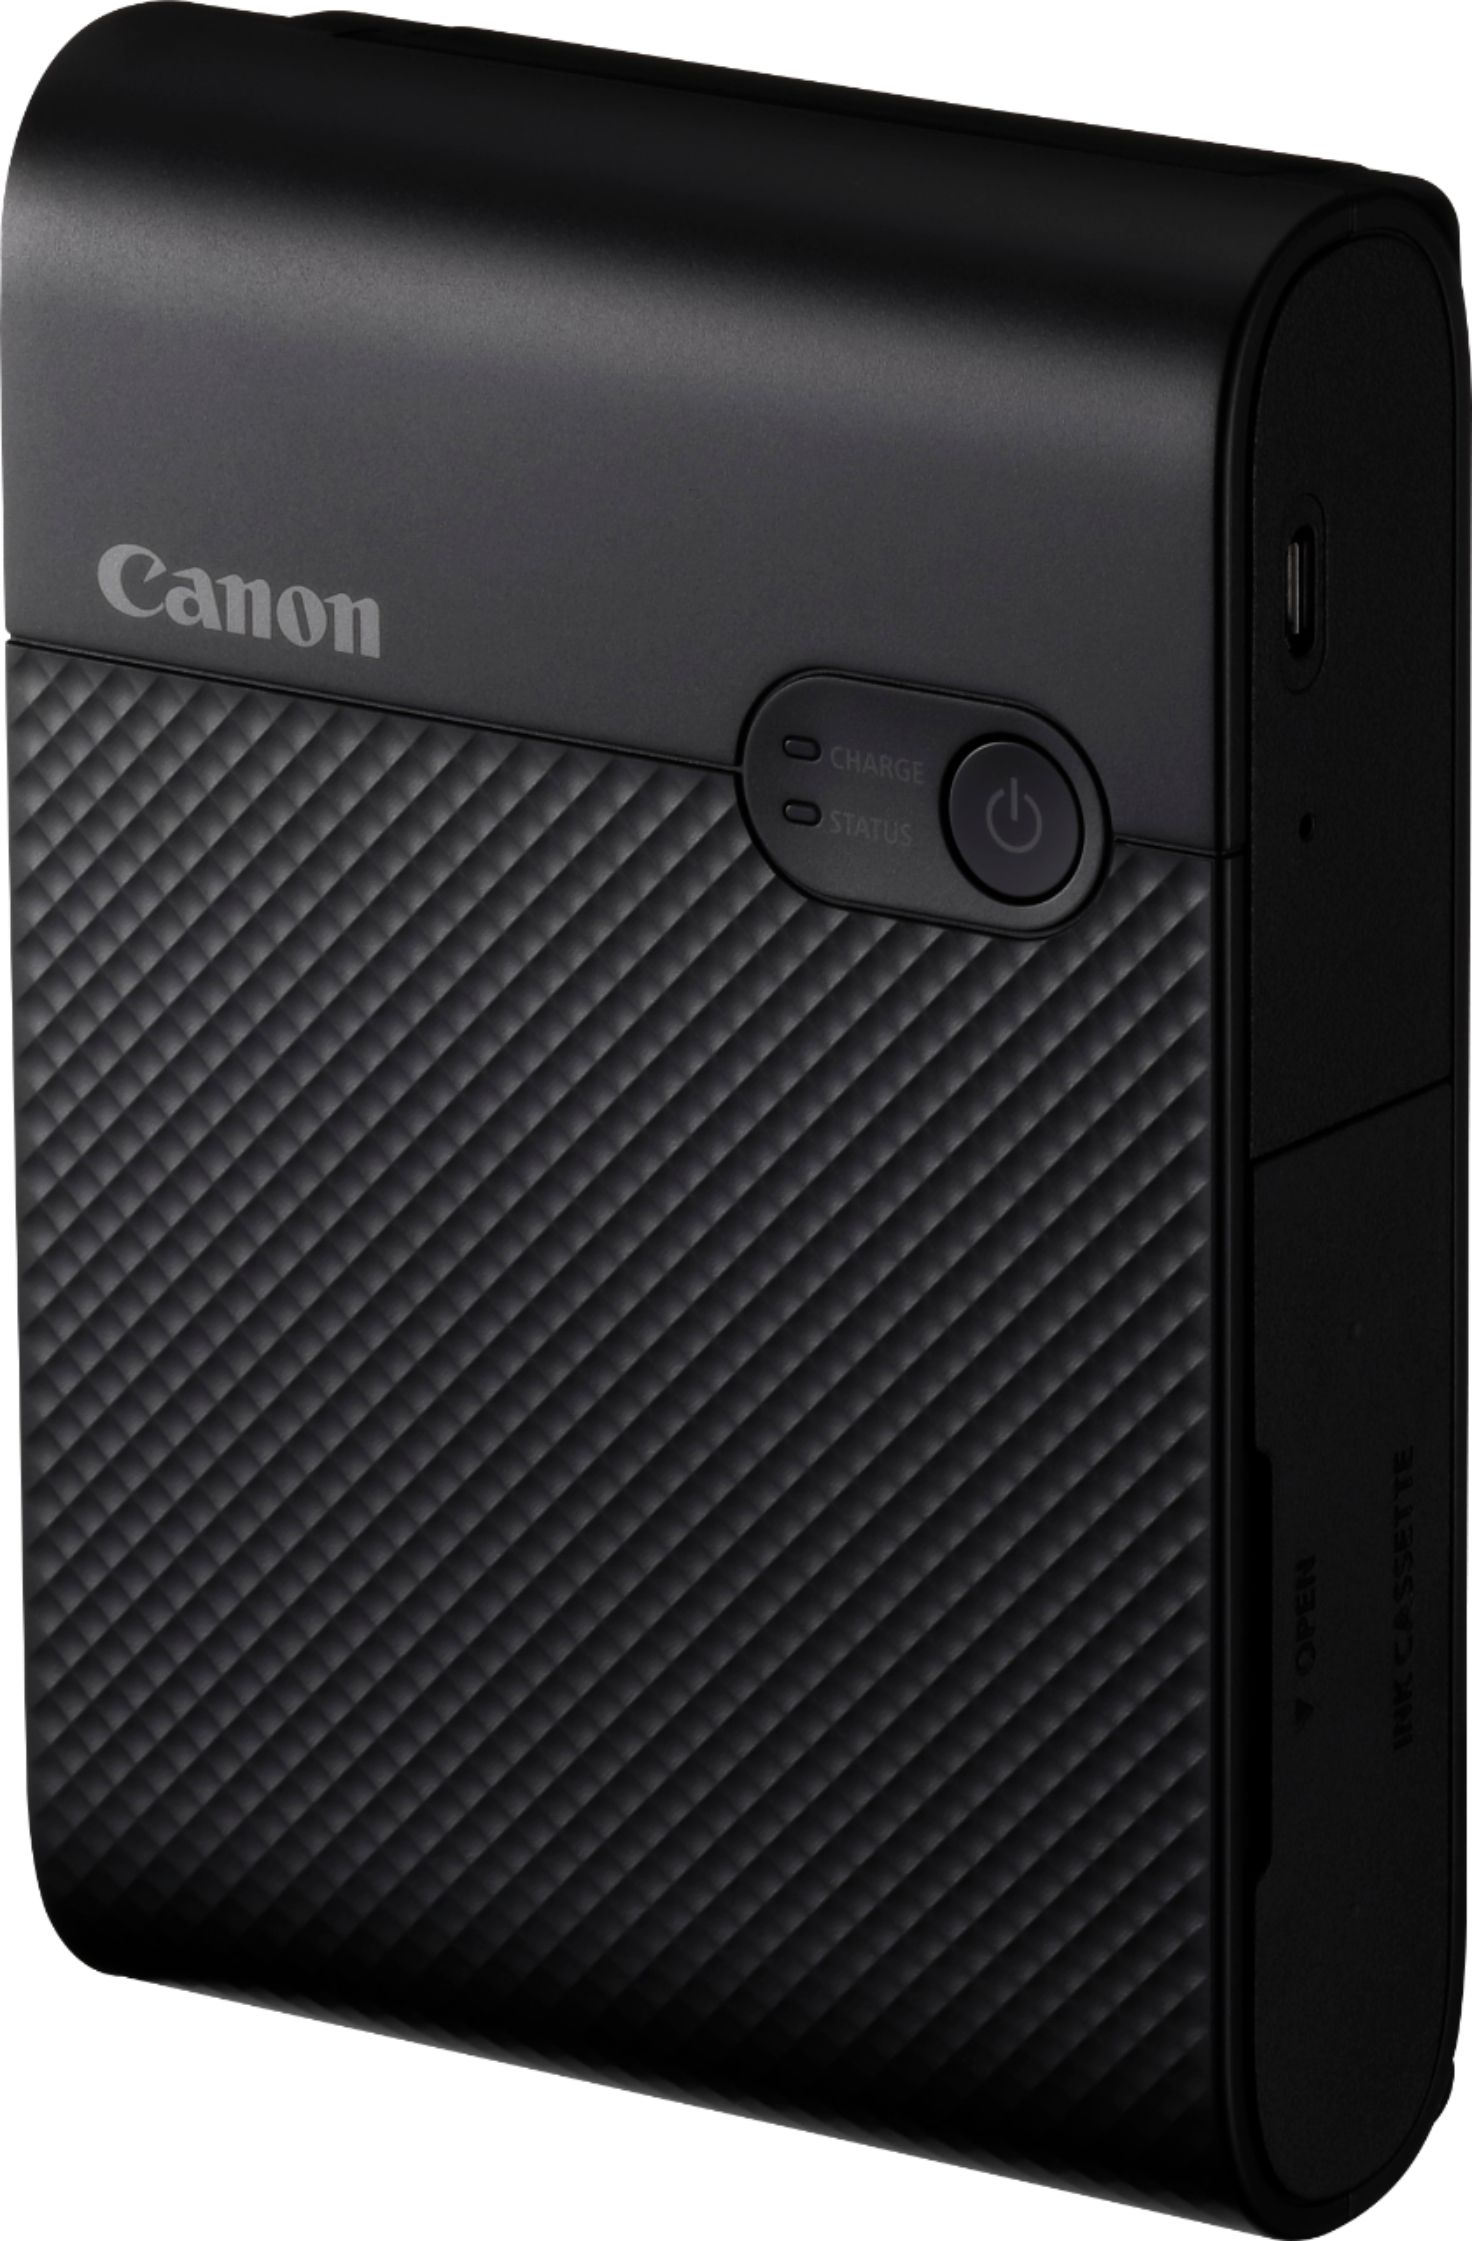 Canon SELPHY Square QX10 Wireless Photo Printer Black 4107C002 